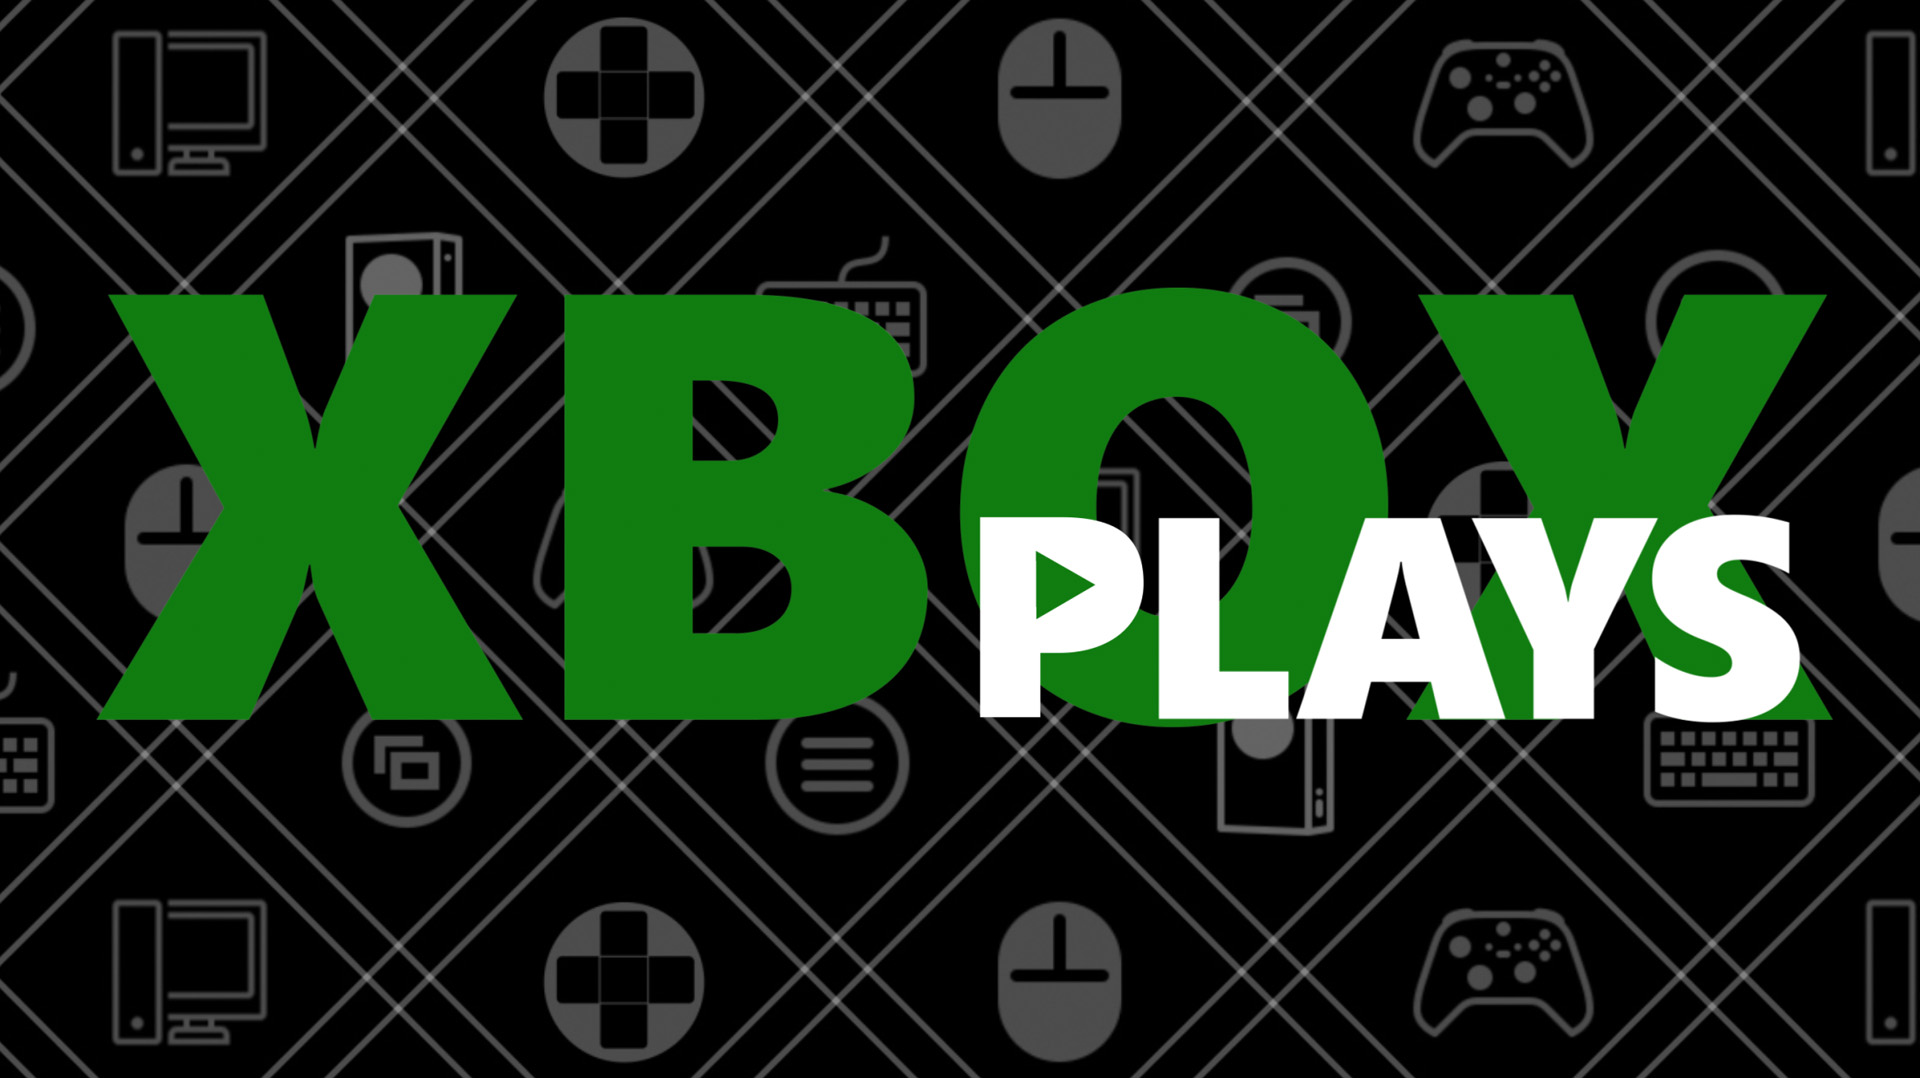 Das Xbox Plays-Logo vor einem gemusterten Hintergrund mit stilisierten Xbox-Controllern, Tasten und PC-Zubehör